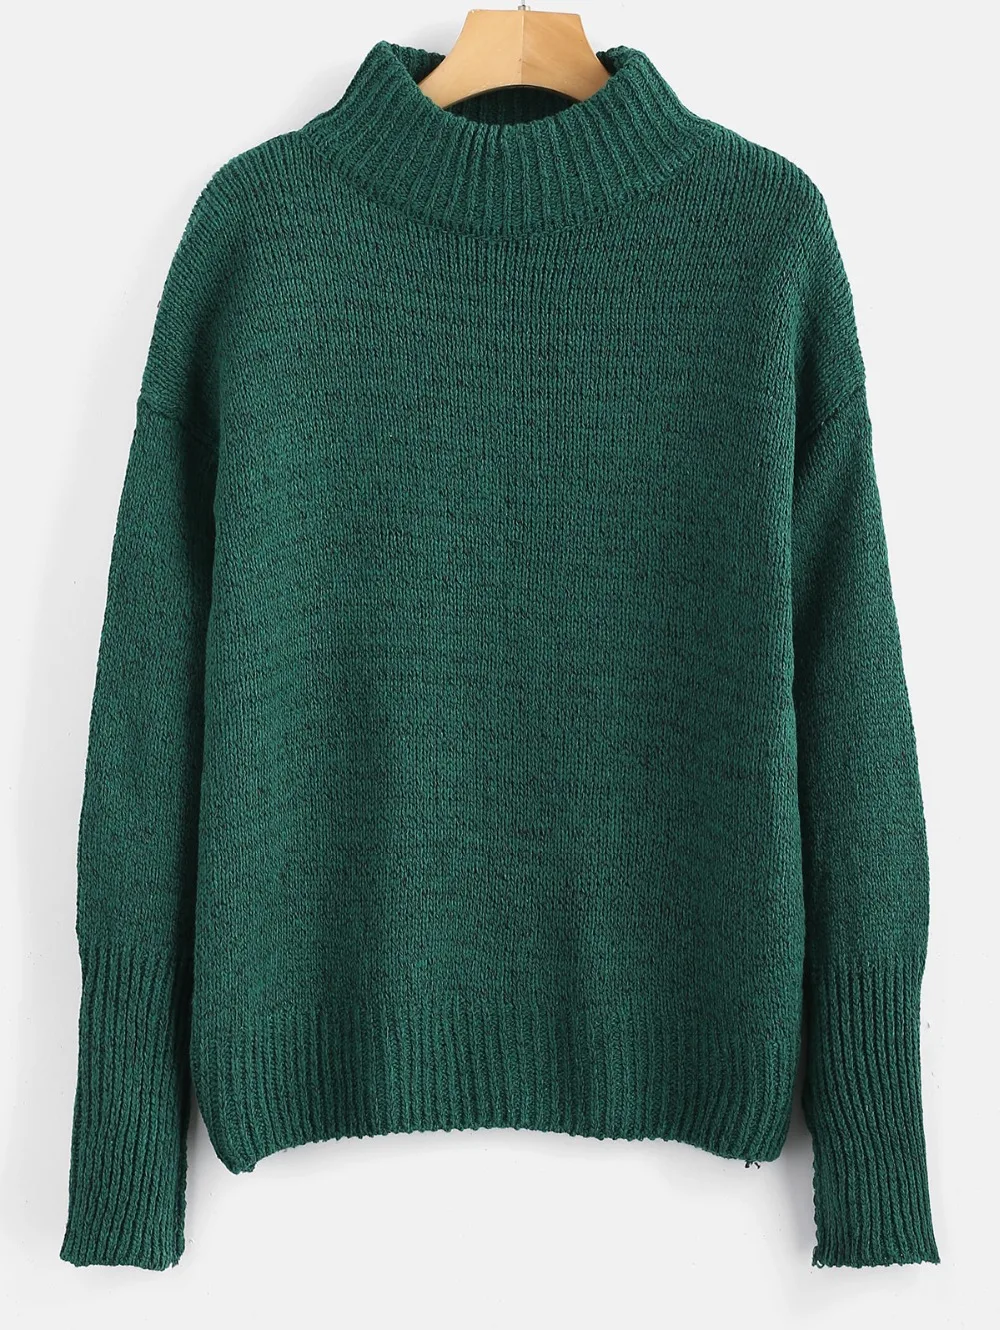 ZAFUL, теплый, меланжевый пуловер, свитер с открытыми плечами, круглый вырез, длинный рукав, хлопок, базовый свитер, осенние пуловеры, мода